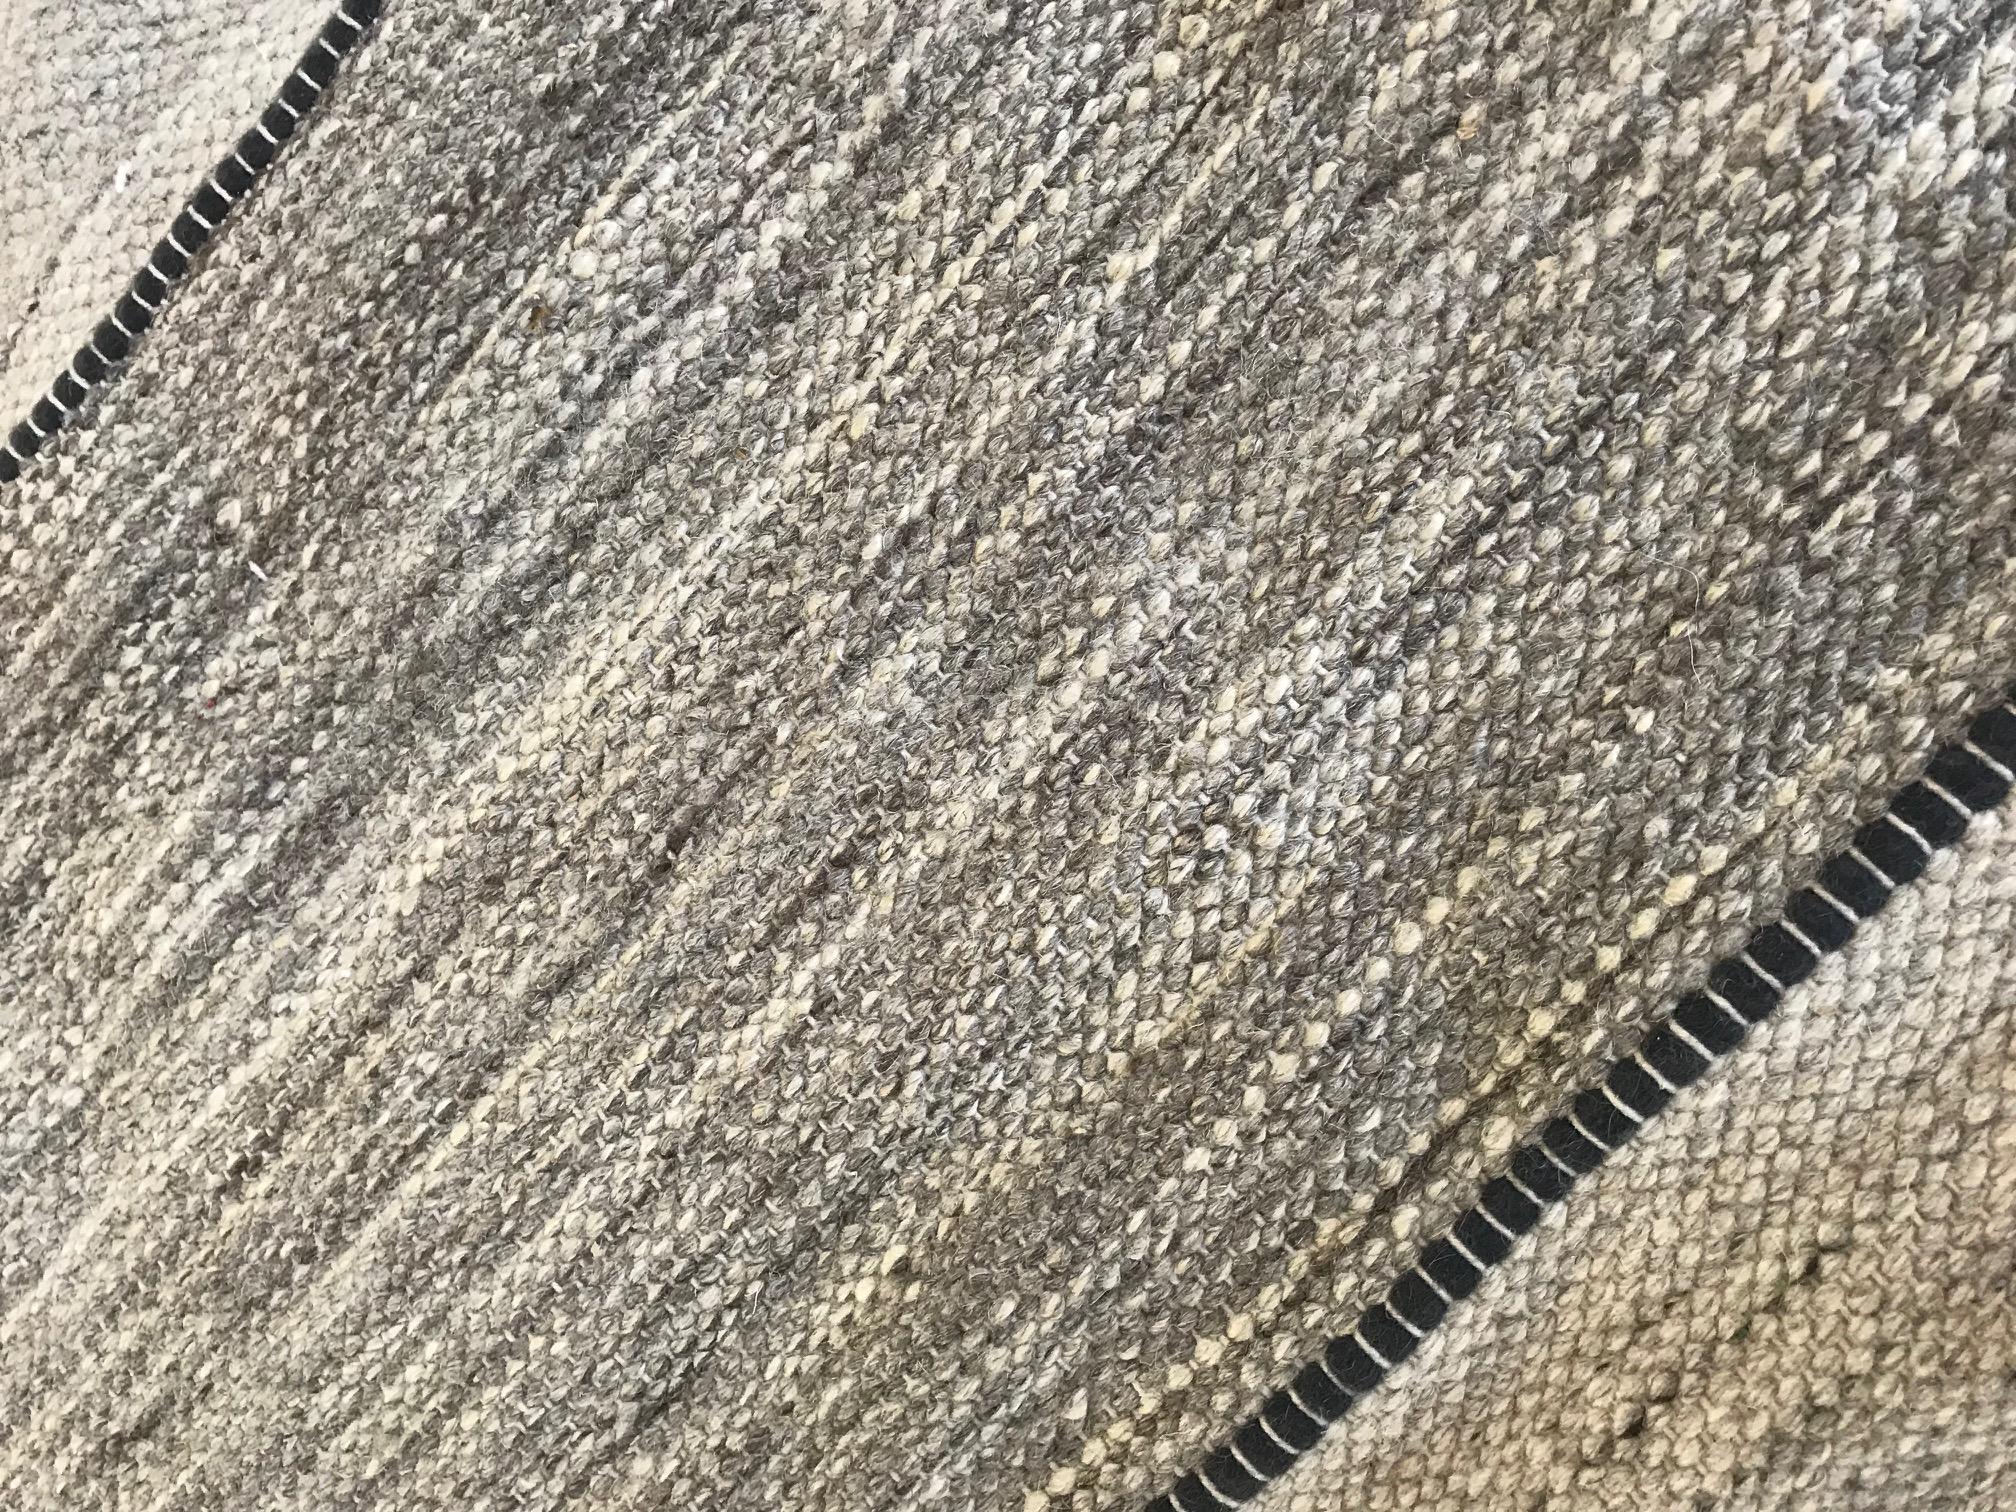 Doris Leslie Blau Collection modern striped natural flat-weave rug
Size: 11'10